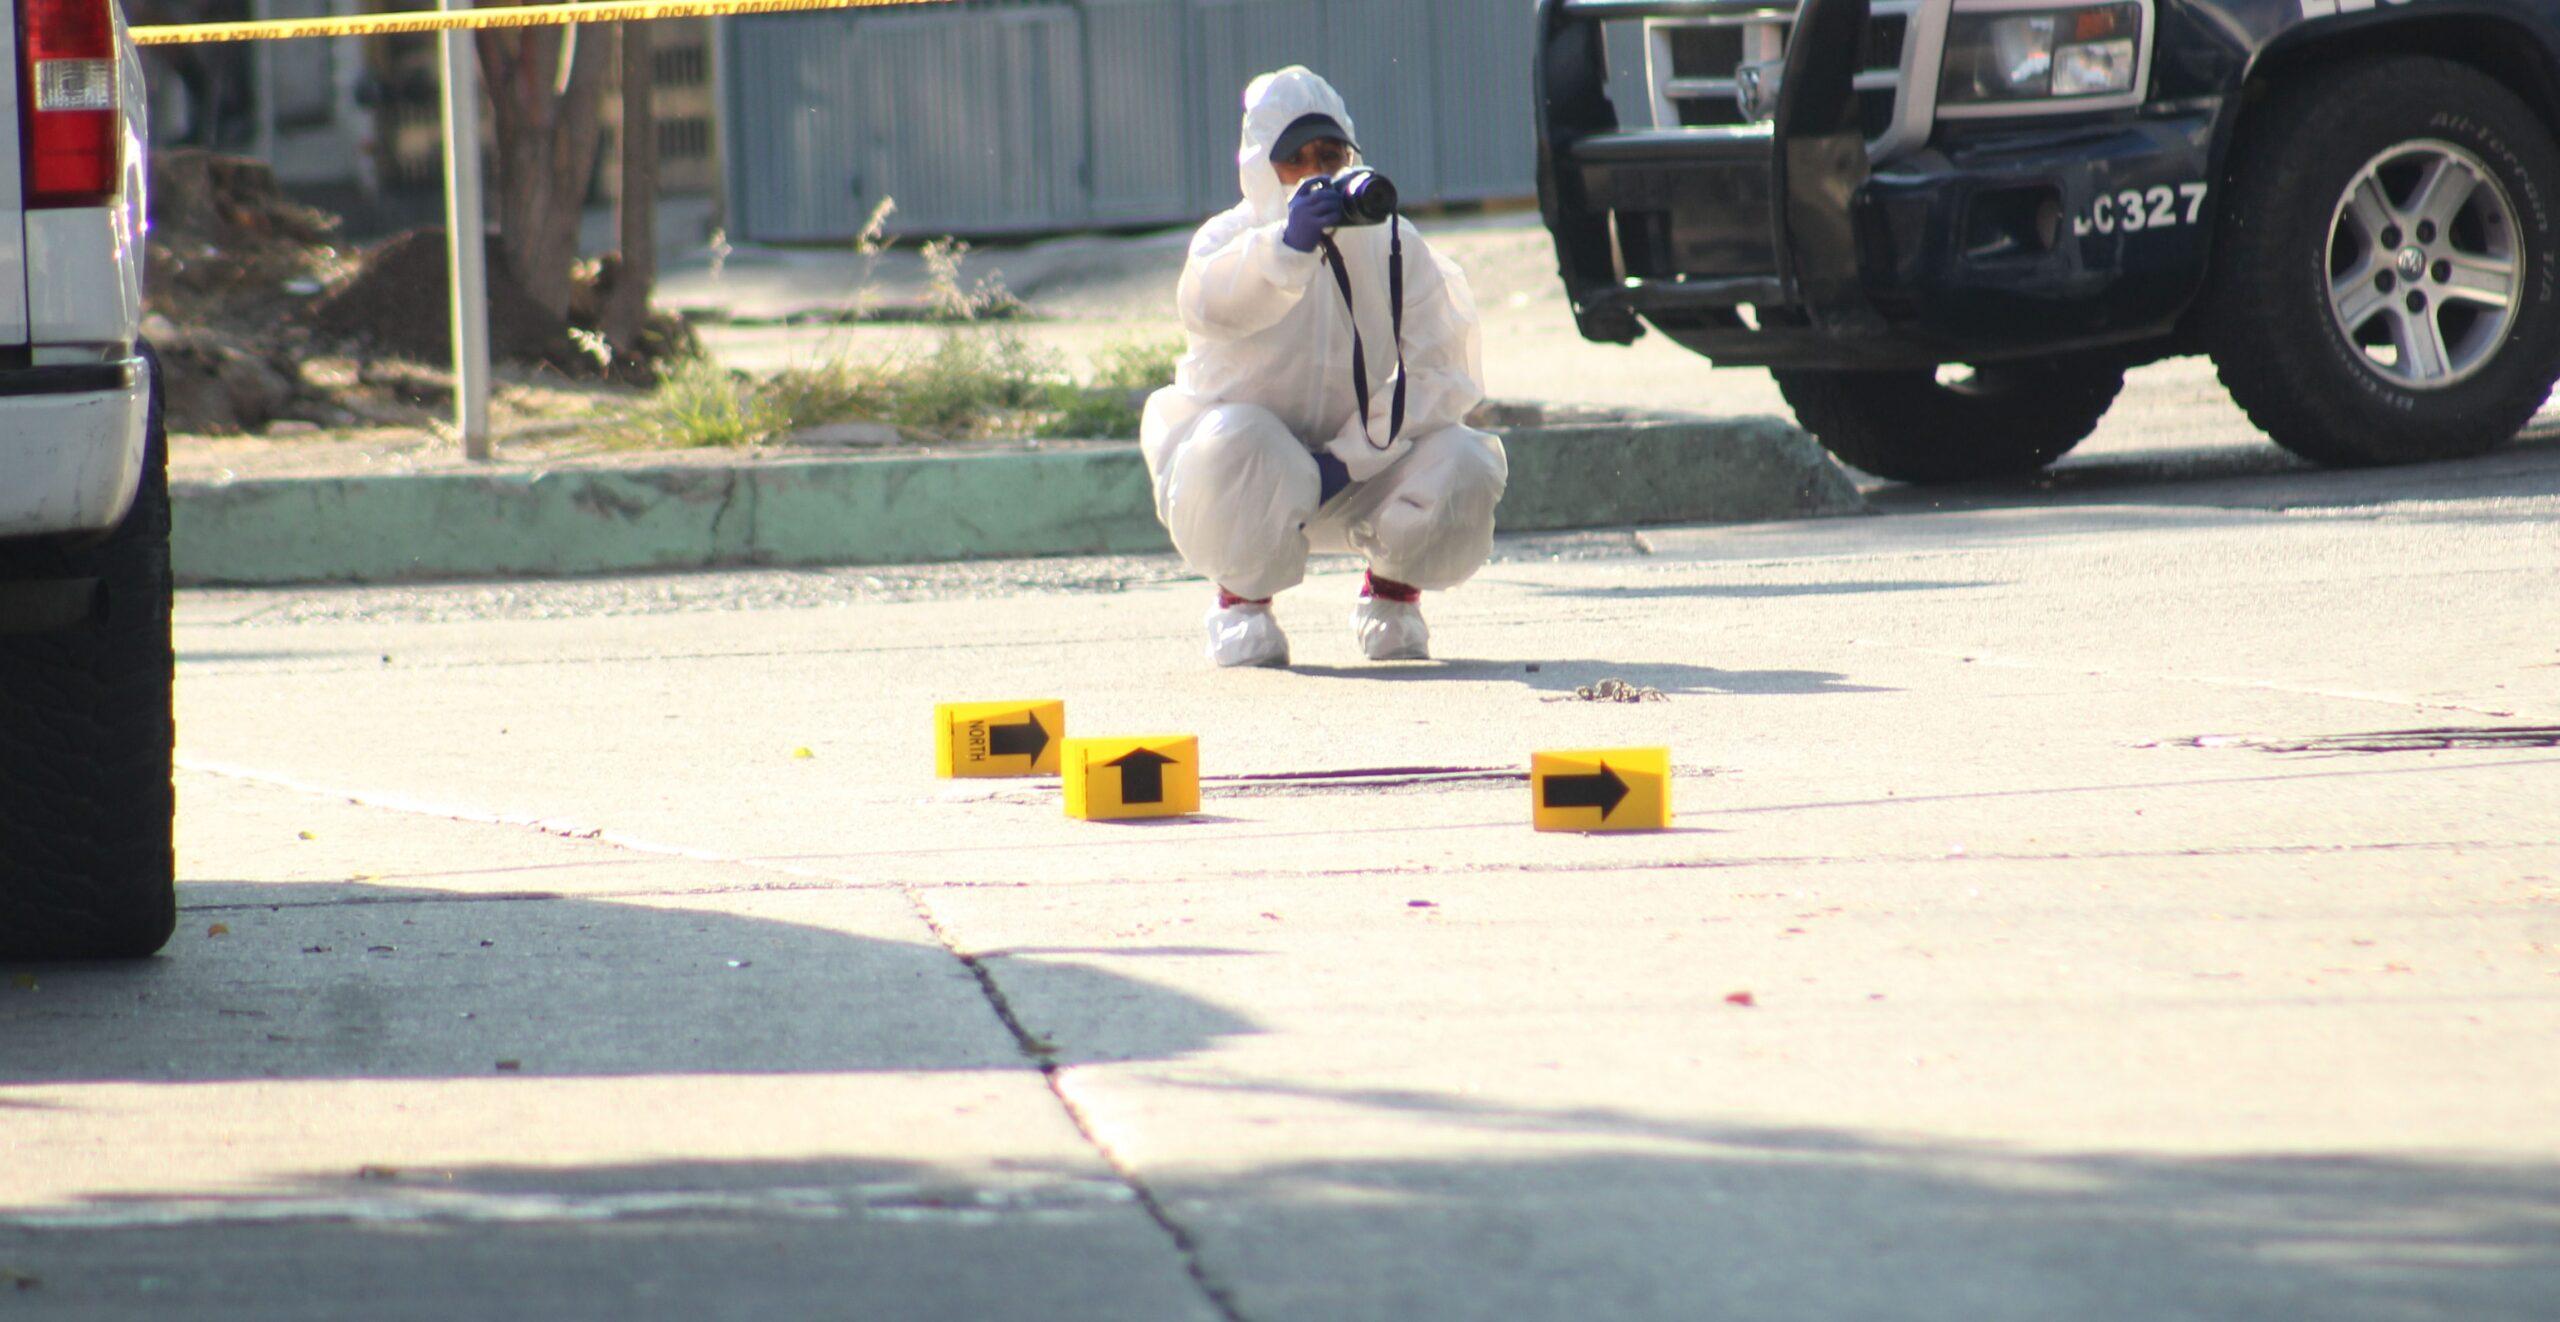 Fin de semana violento en Guanajuato; asesinan a 6 personas en balaceras y hallan restos humanos